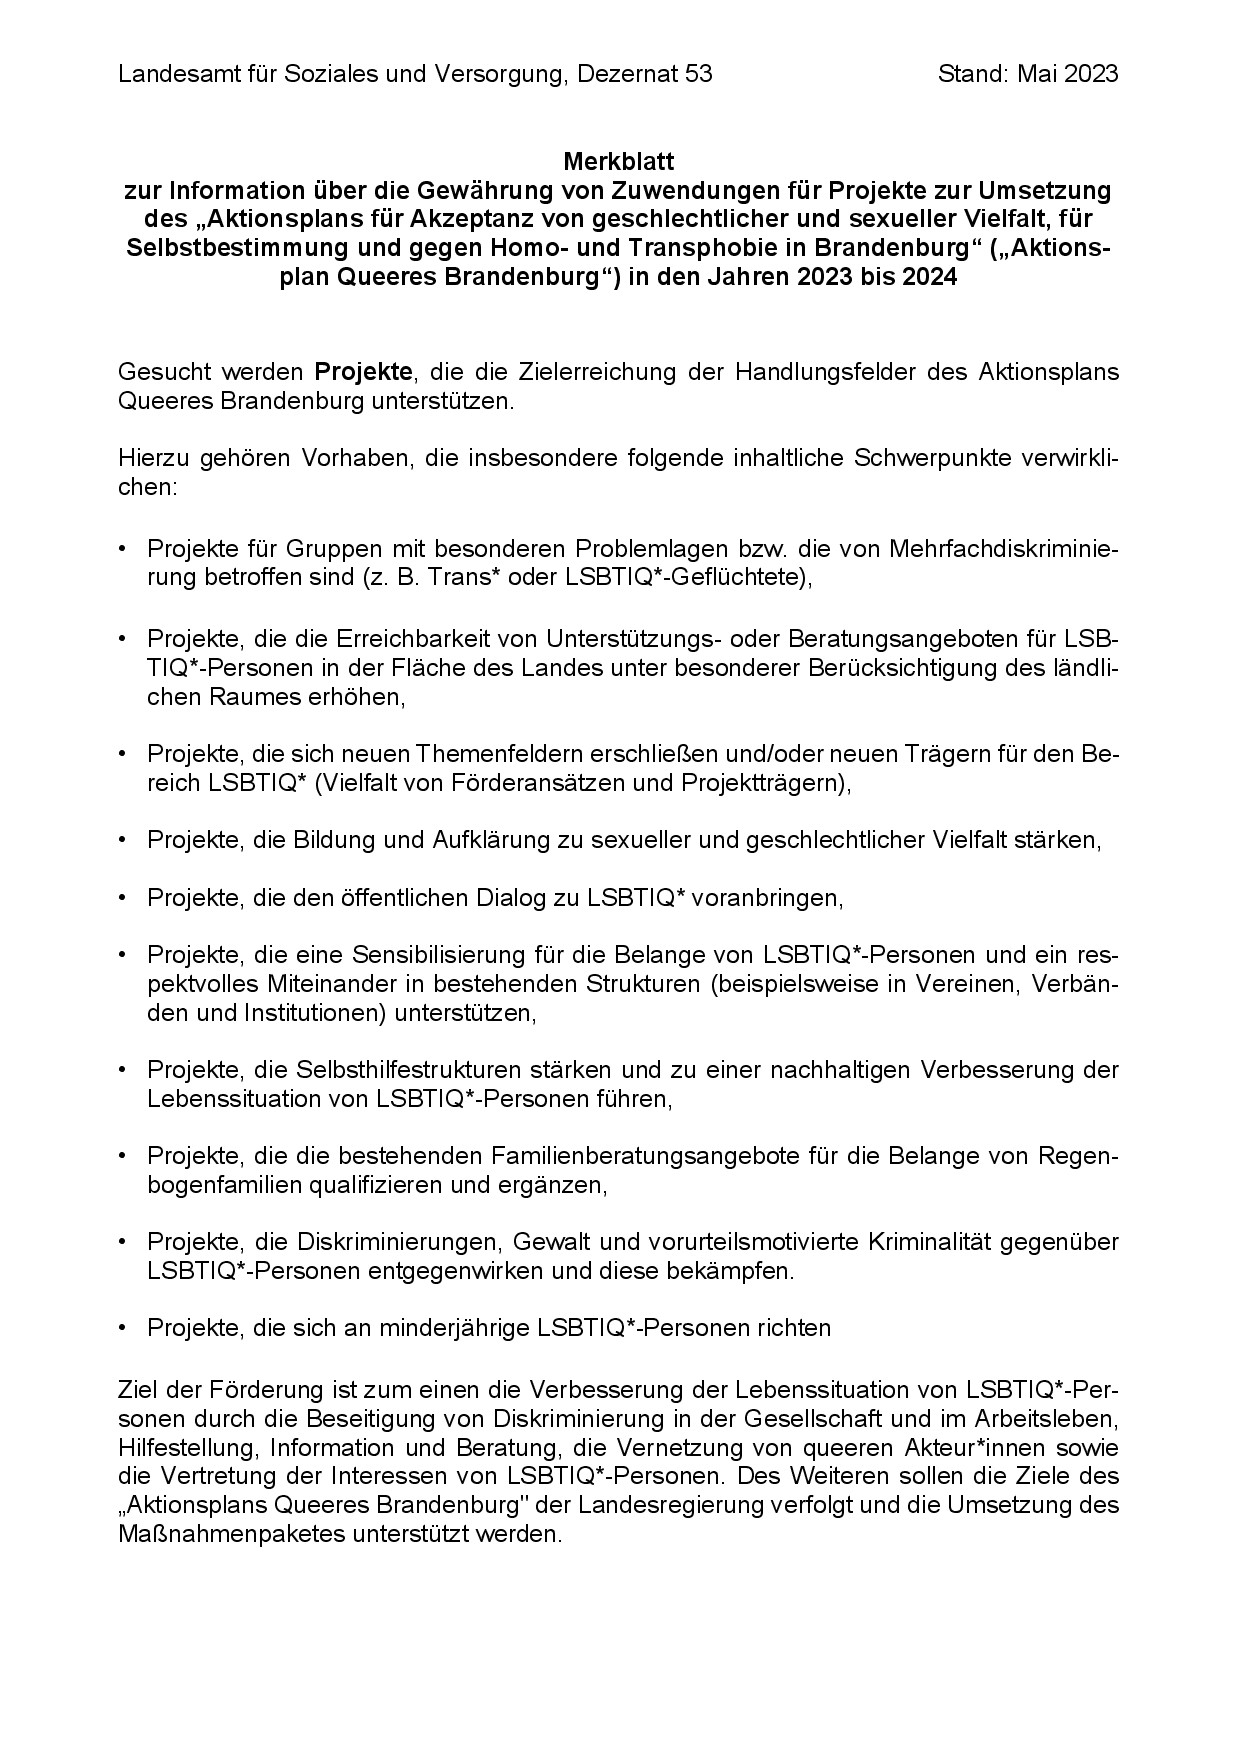 Bild vergrößern (Bild: Merkblatt - Aktionsplan Queeres Brandenburg in den Jahren 2023 bis 2024-001.jpg)